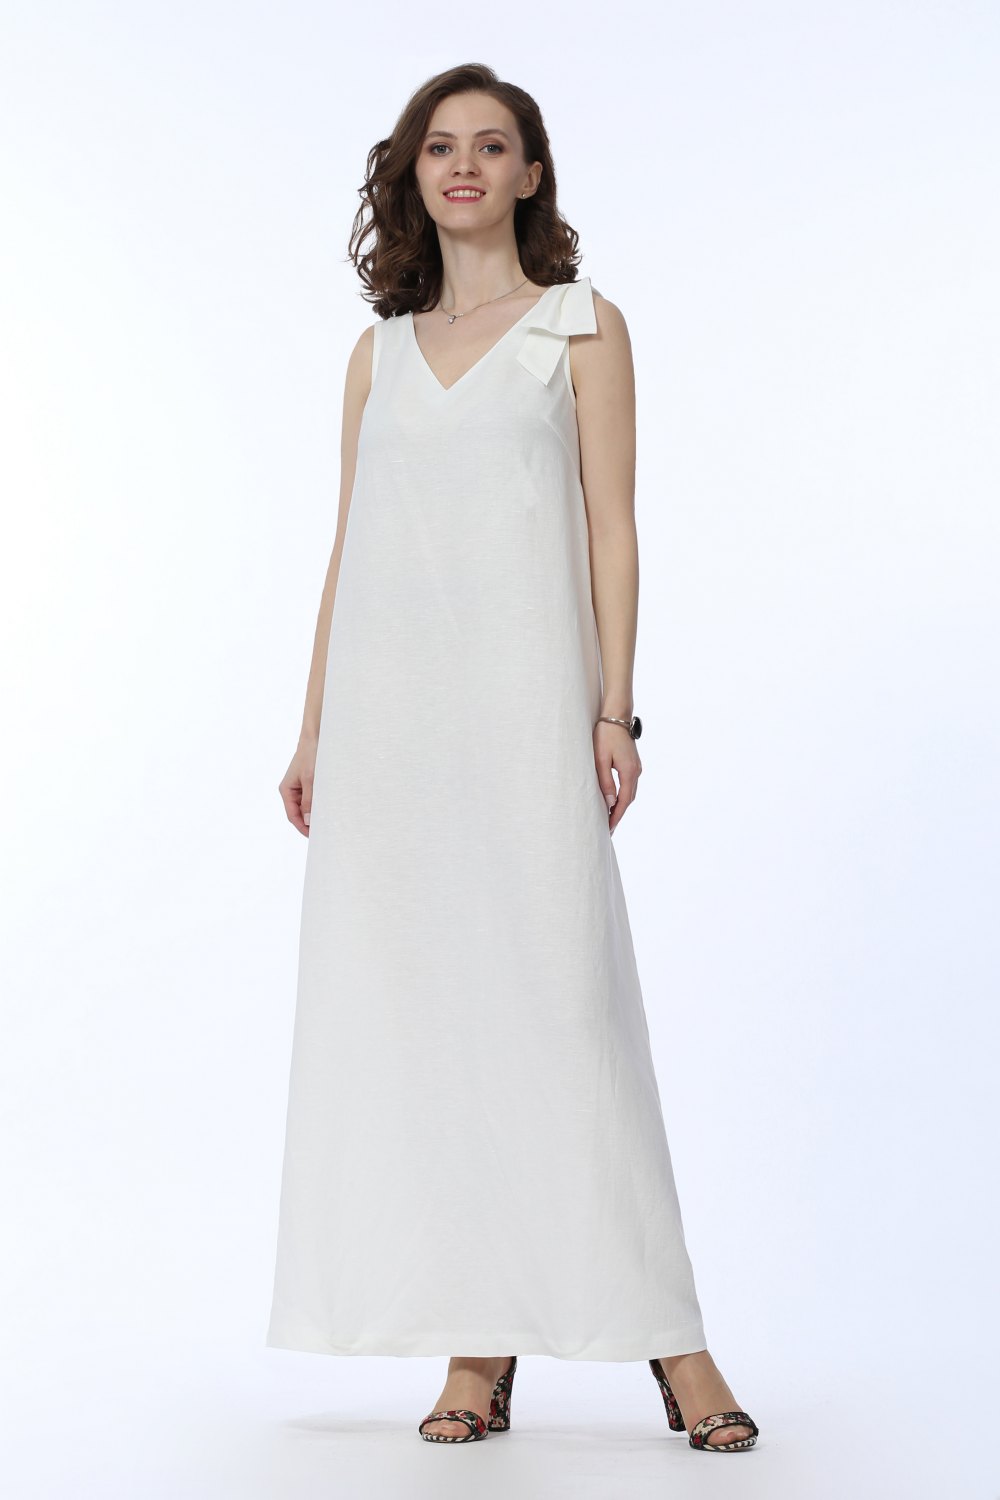 Платье женское "Круиз" модель 338В белое